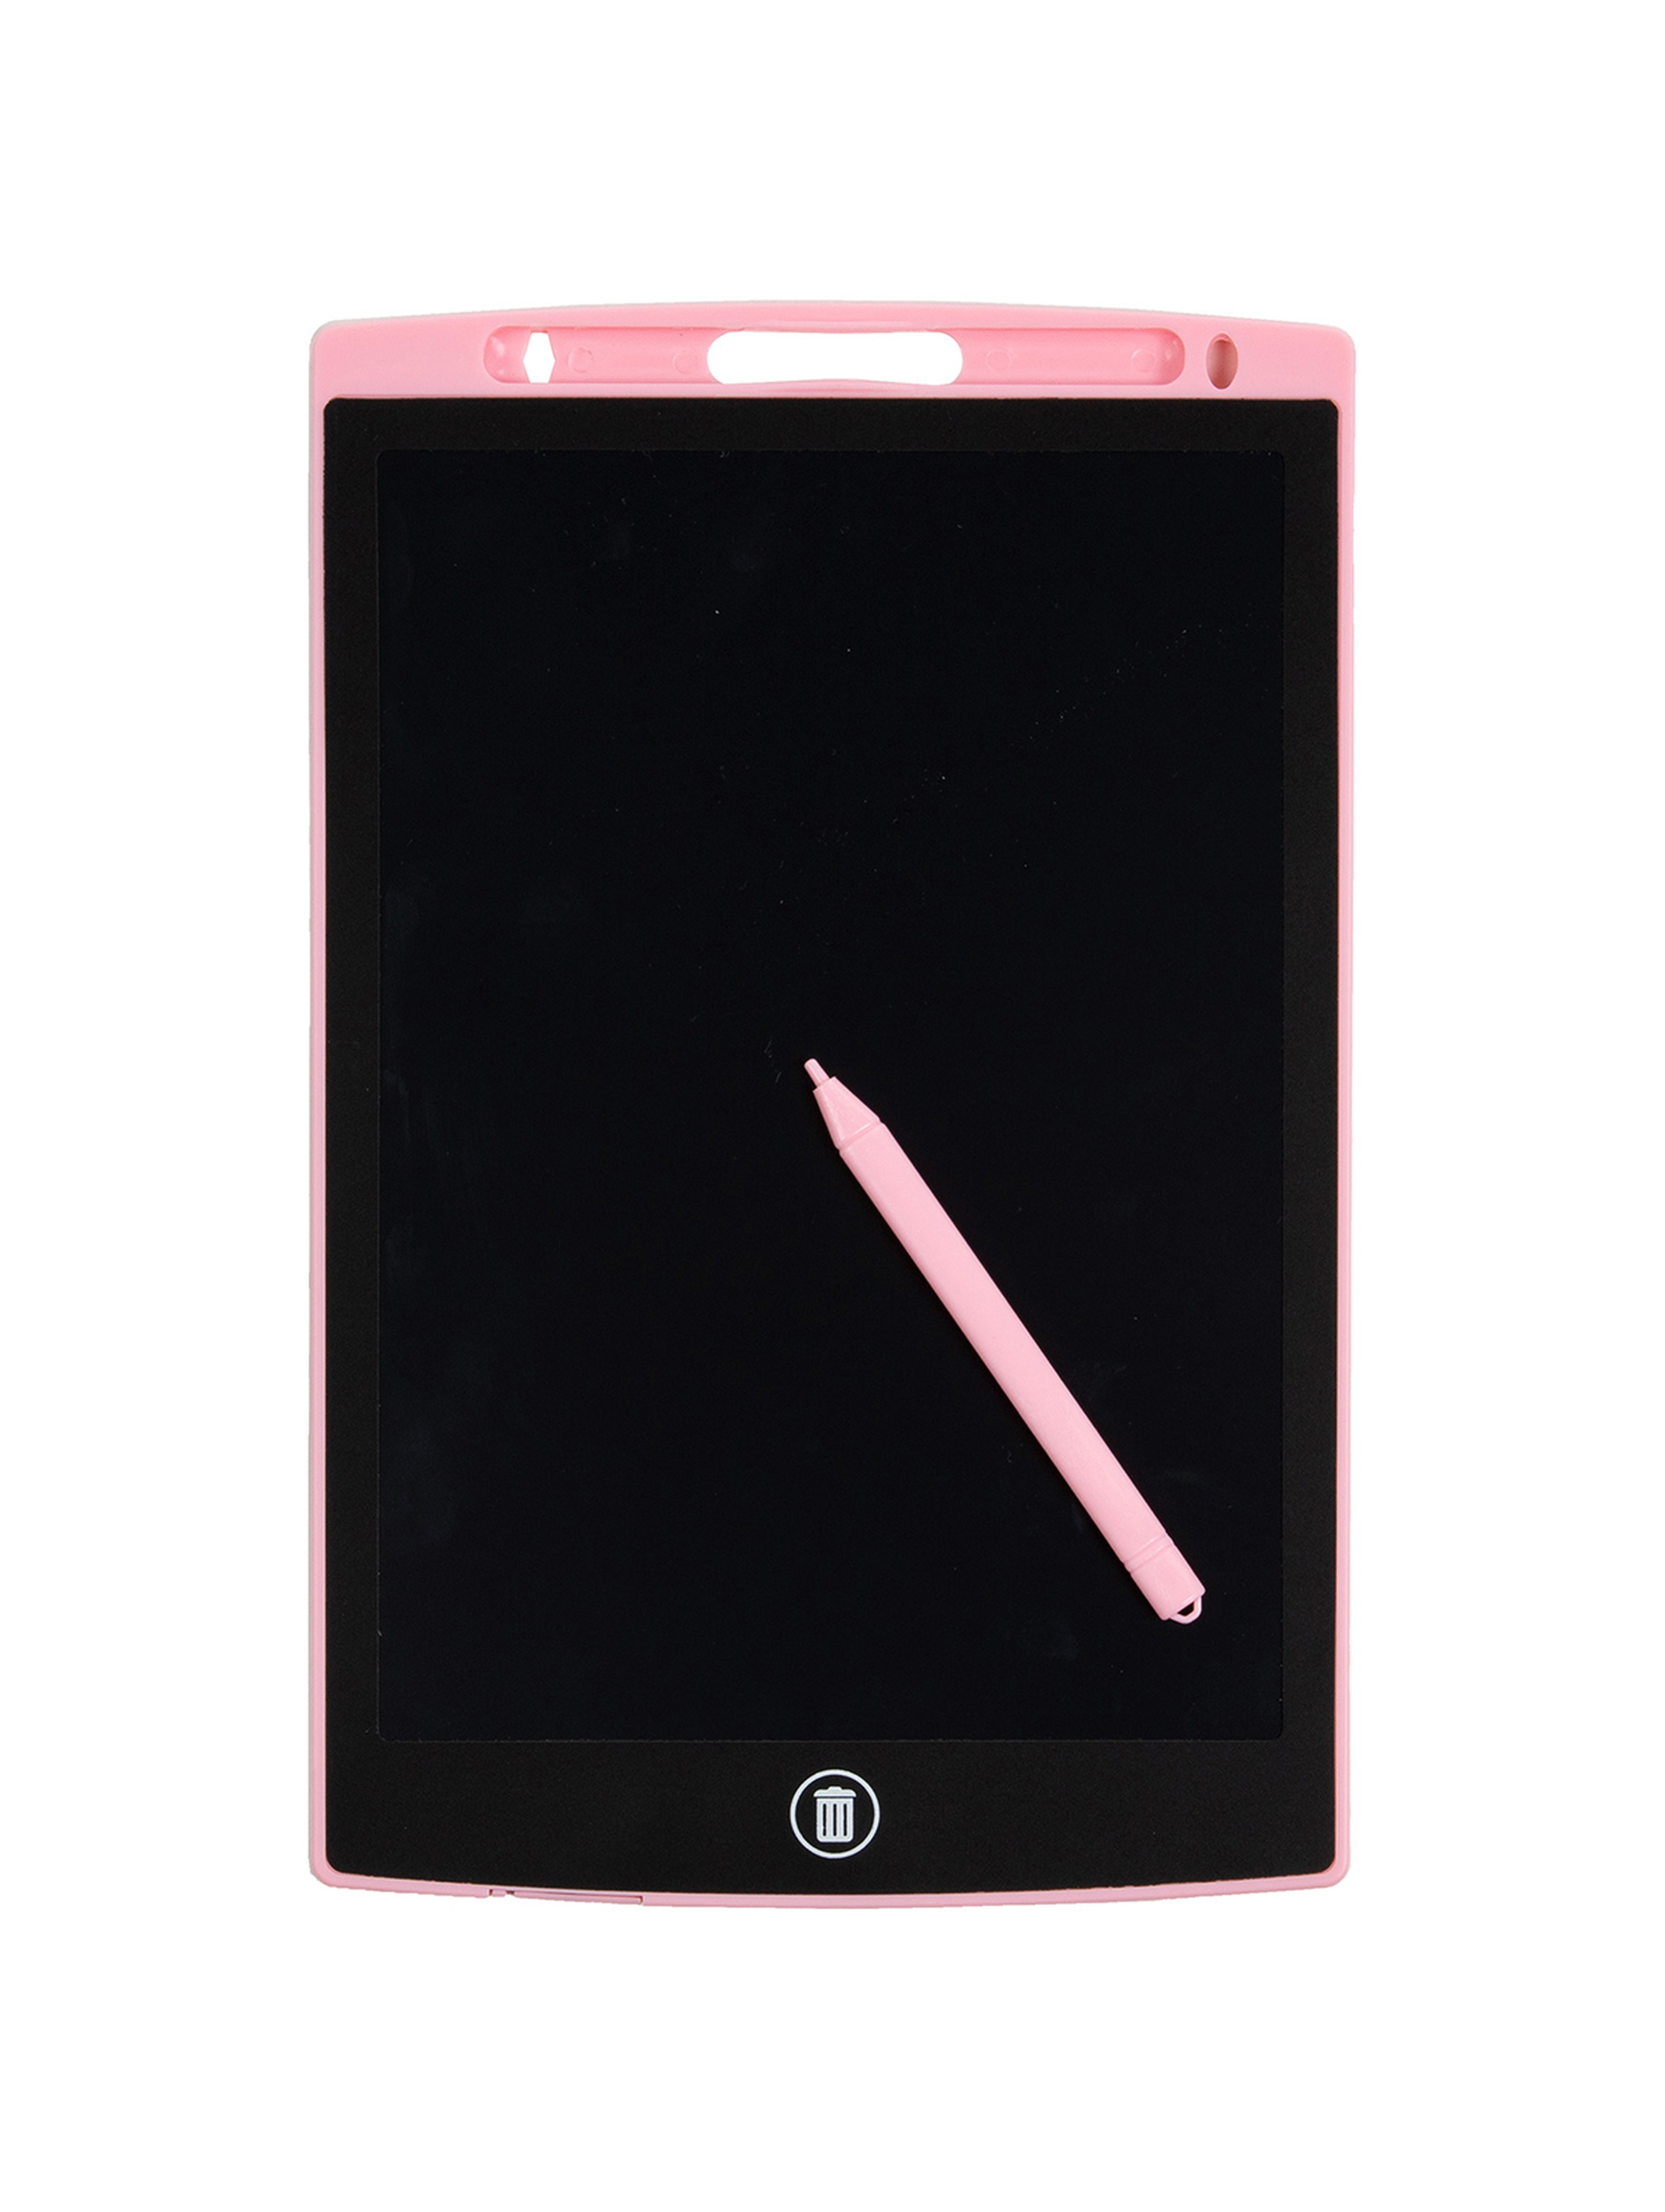 Tablet do rysowania LCD Różowy